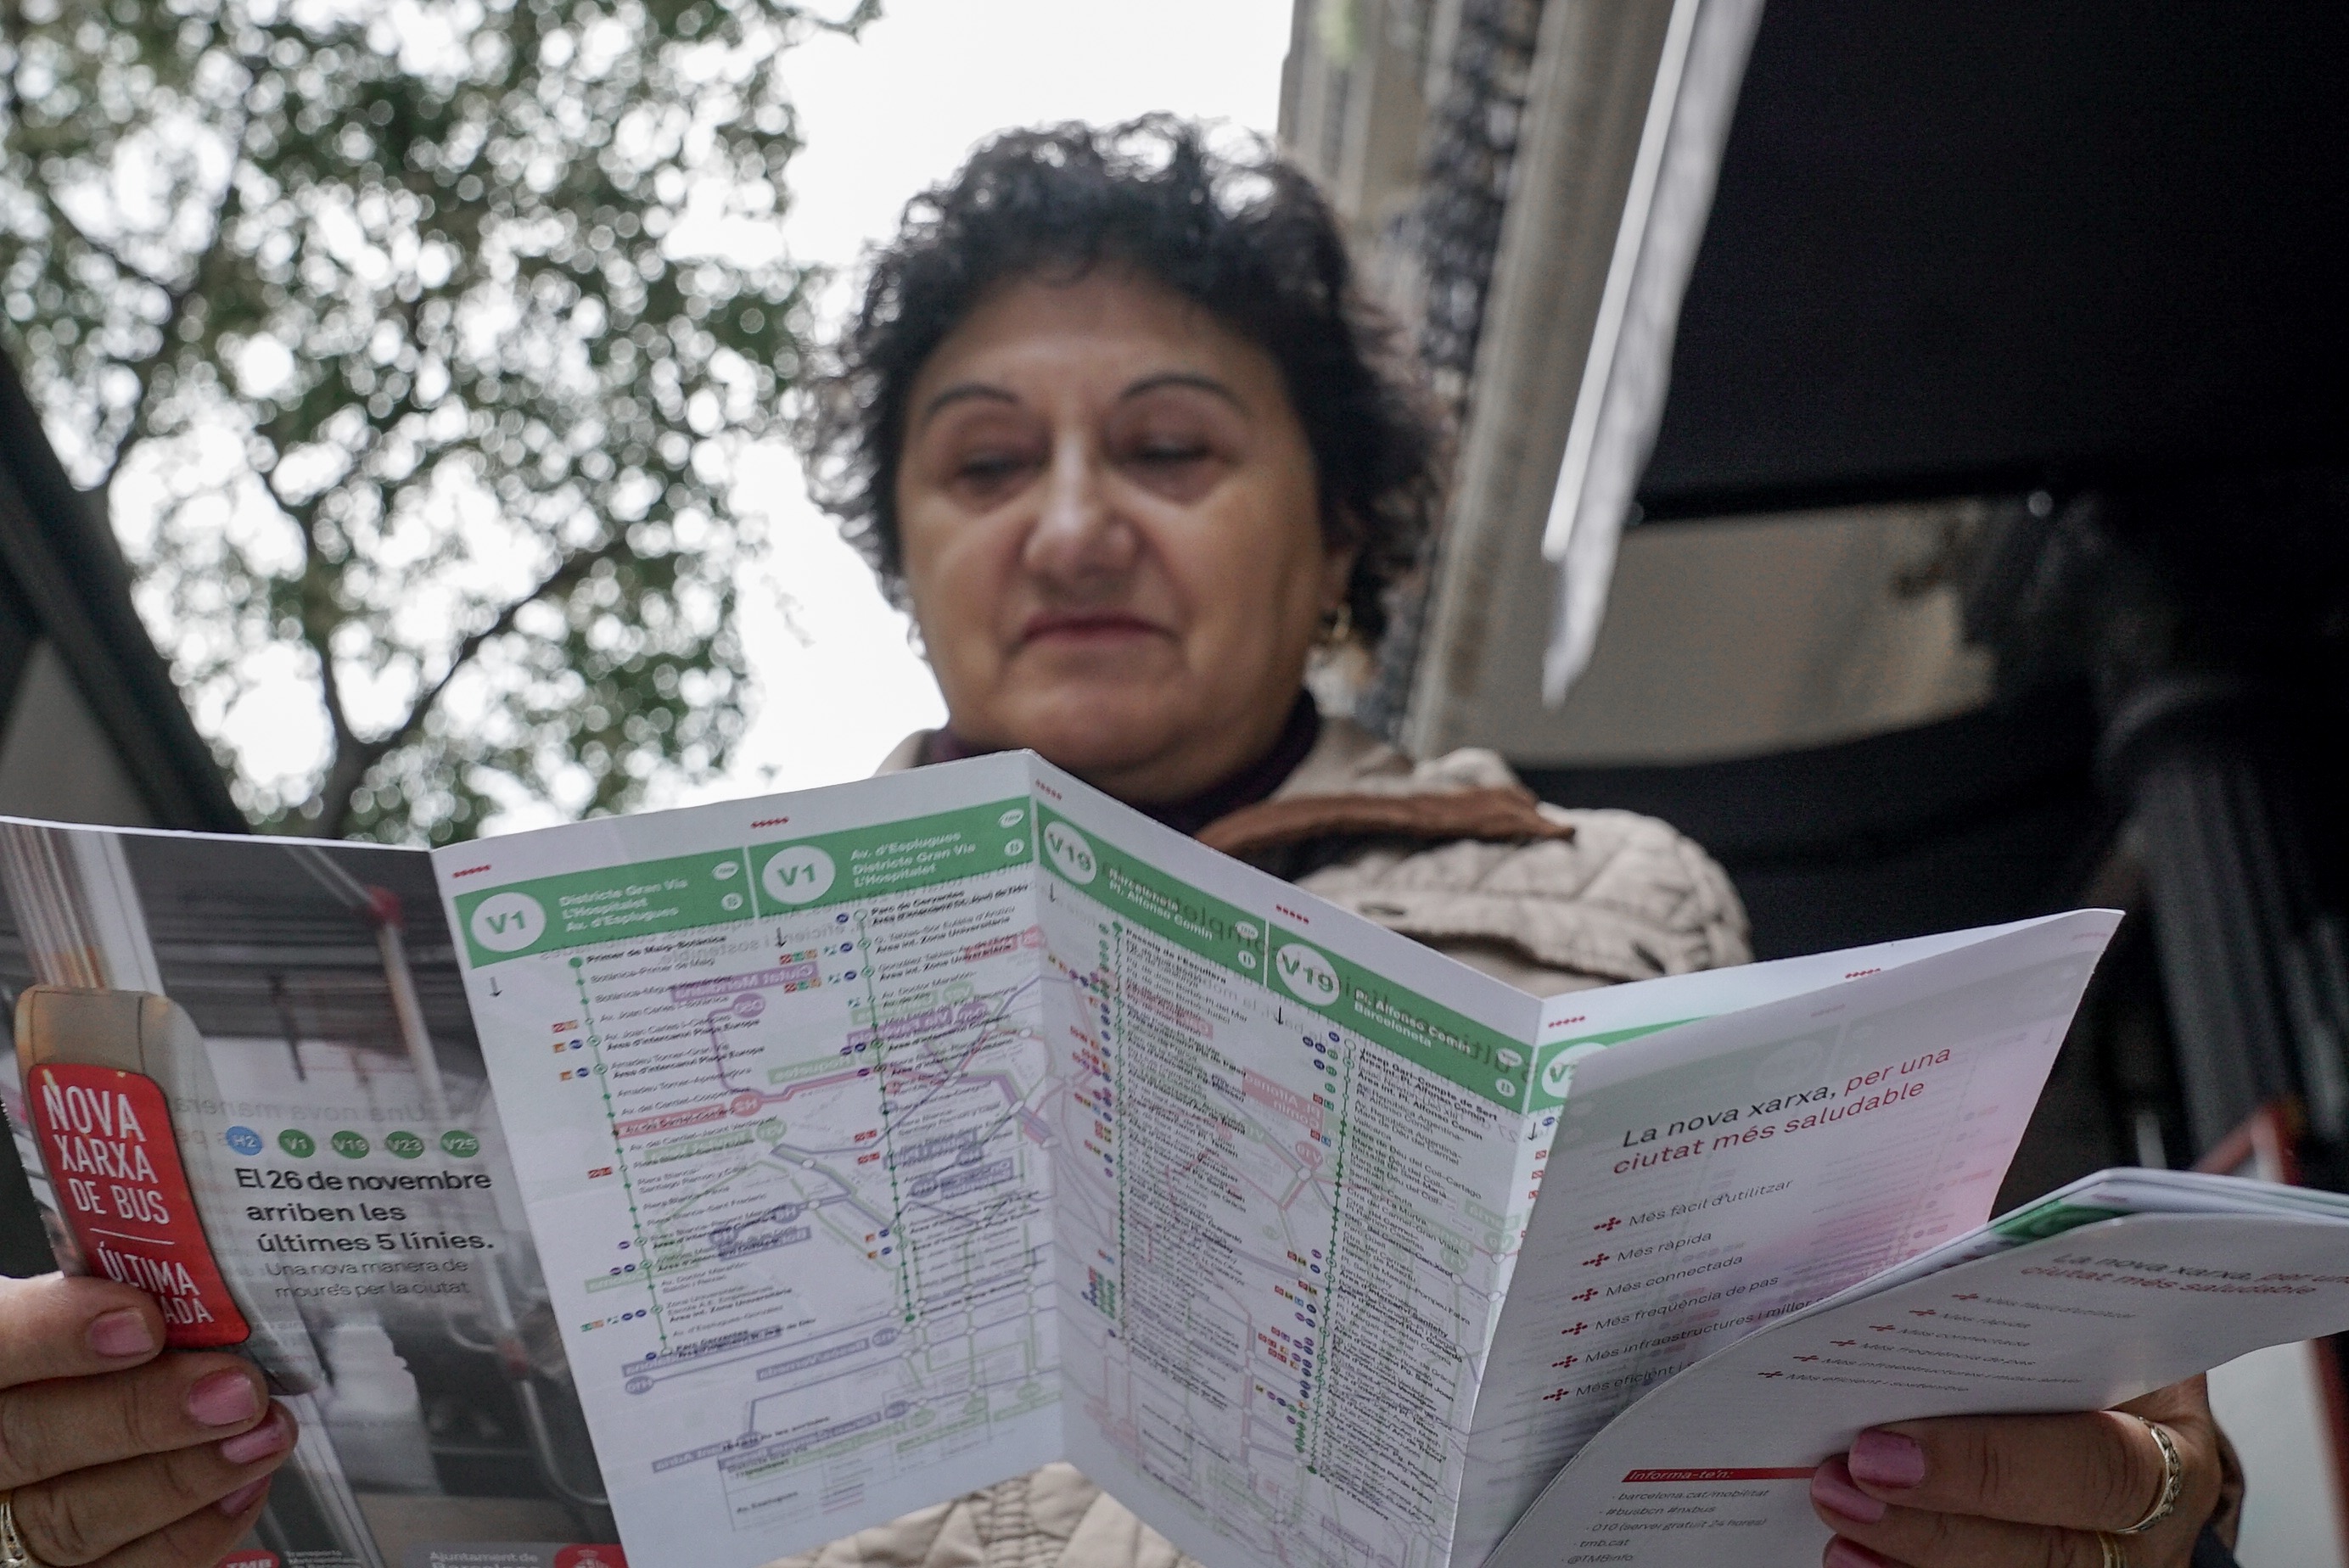 Una dona consulta un mapa de la nova xarxa de bus / Foto: Ajuntament de Barcelona